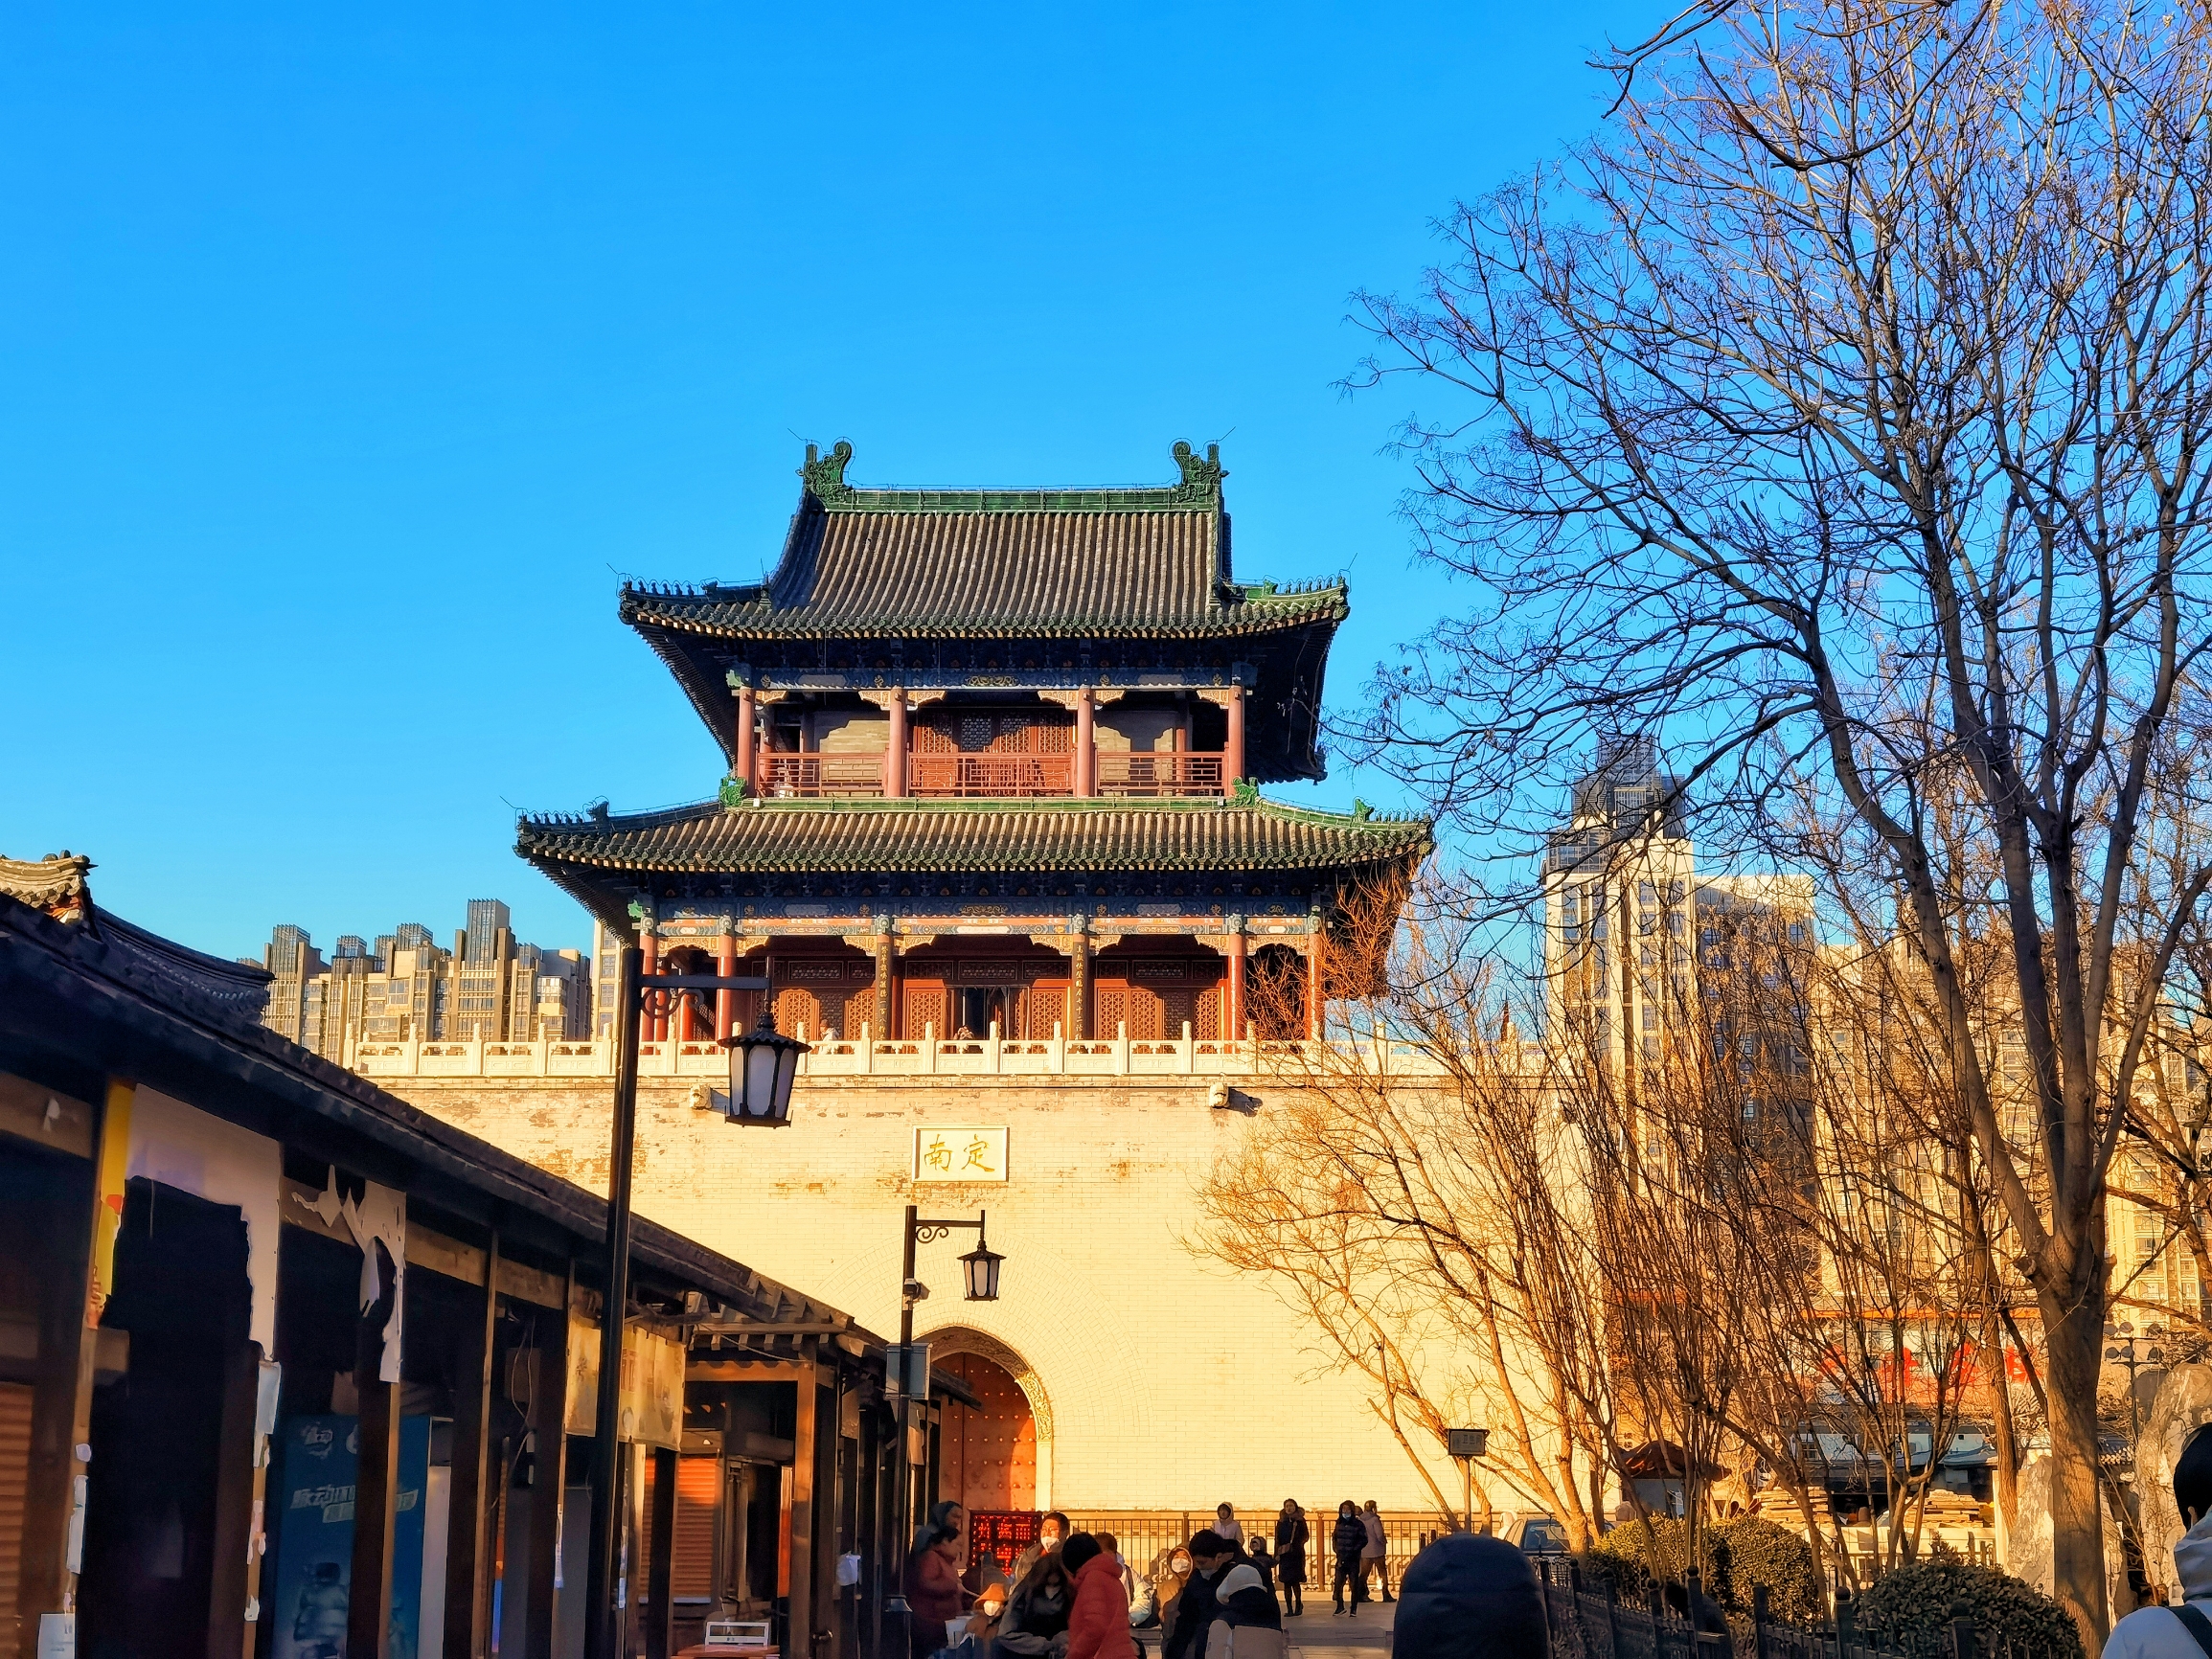 据说“鼓楼”是天津市的发源地